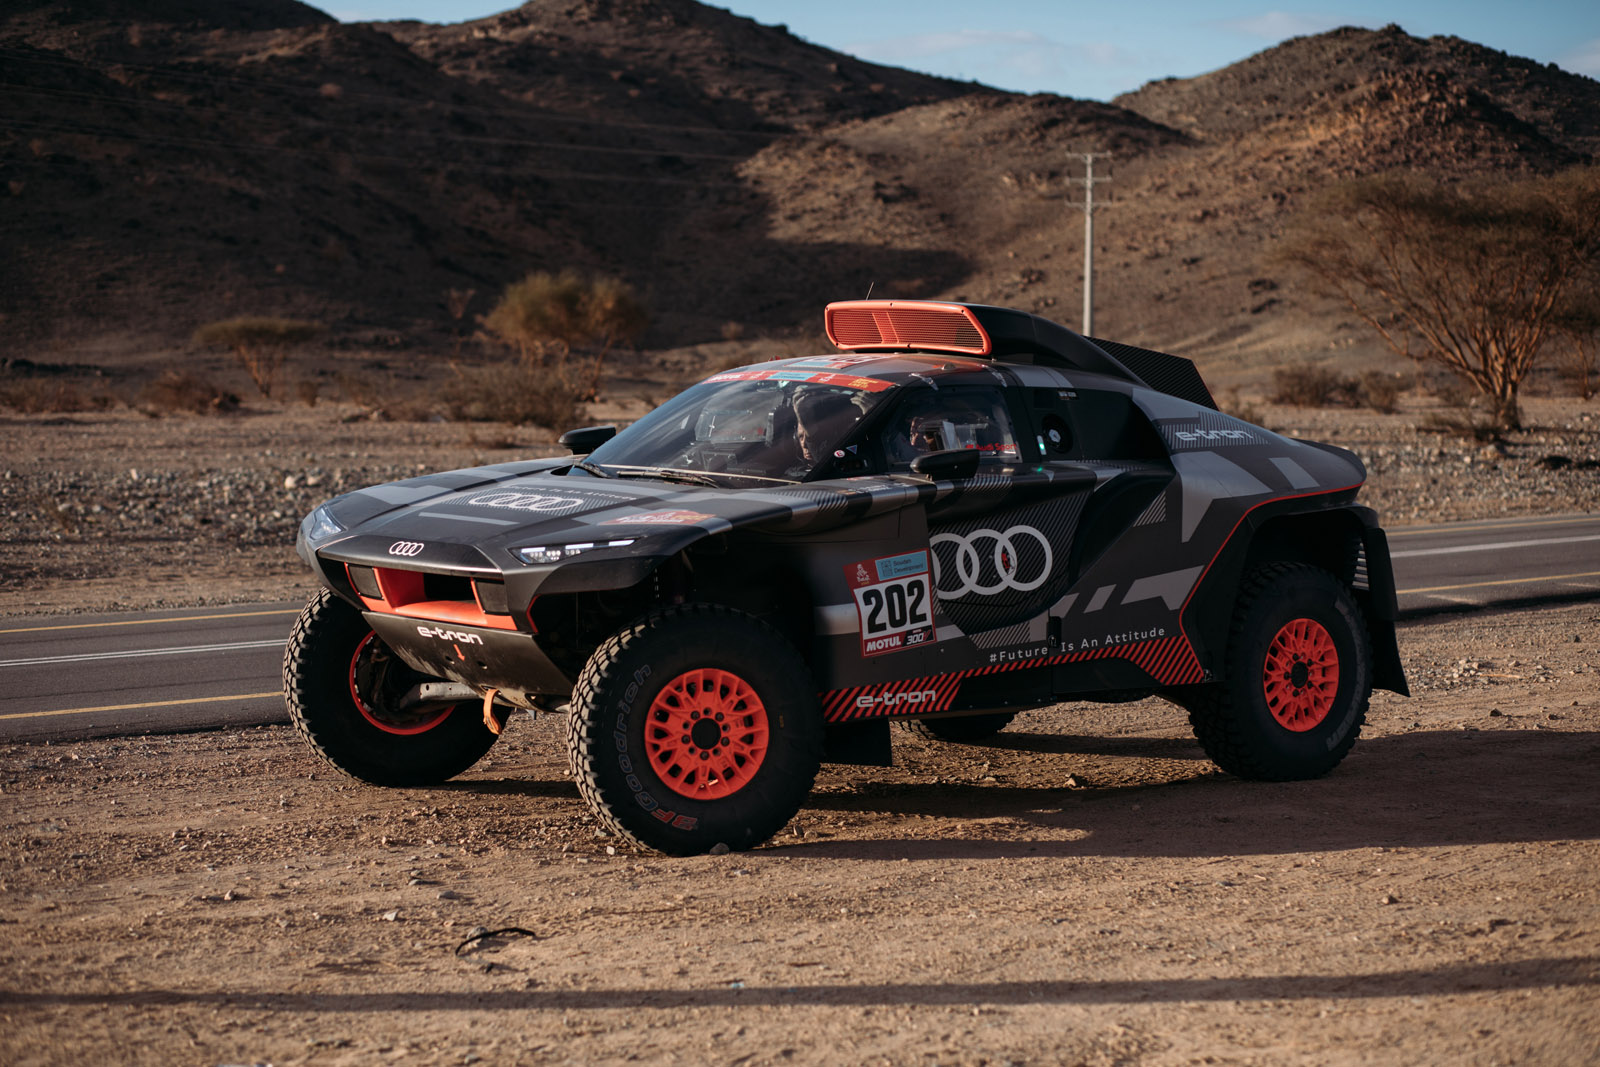 Das hier gezeigte Fahrzeug ist das Rally Dakar Fahrzeug, das nicht als Serienmodell erhältlich ist. The vehicle shown is the Rally Dakar vehicle, not available for public sale.